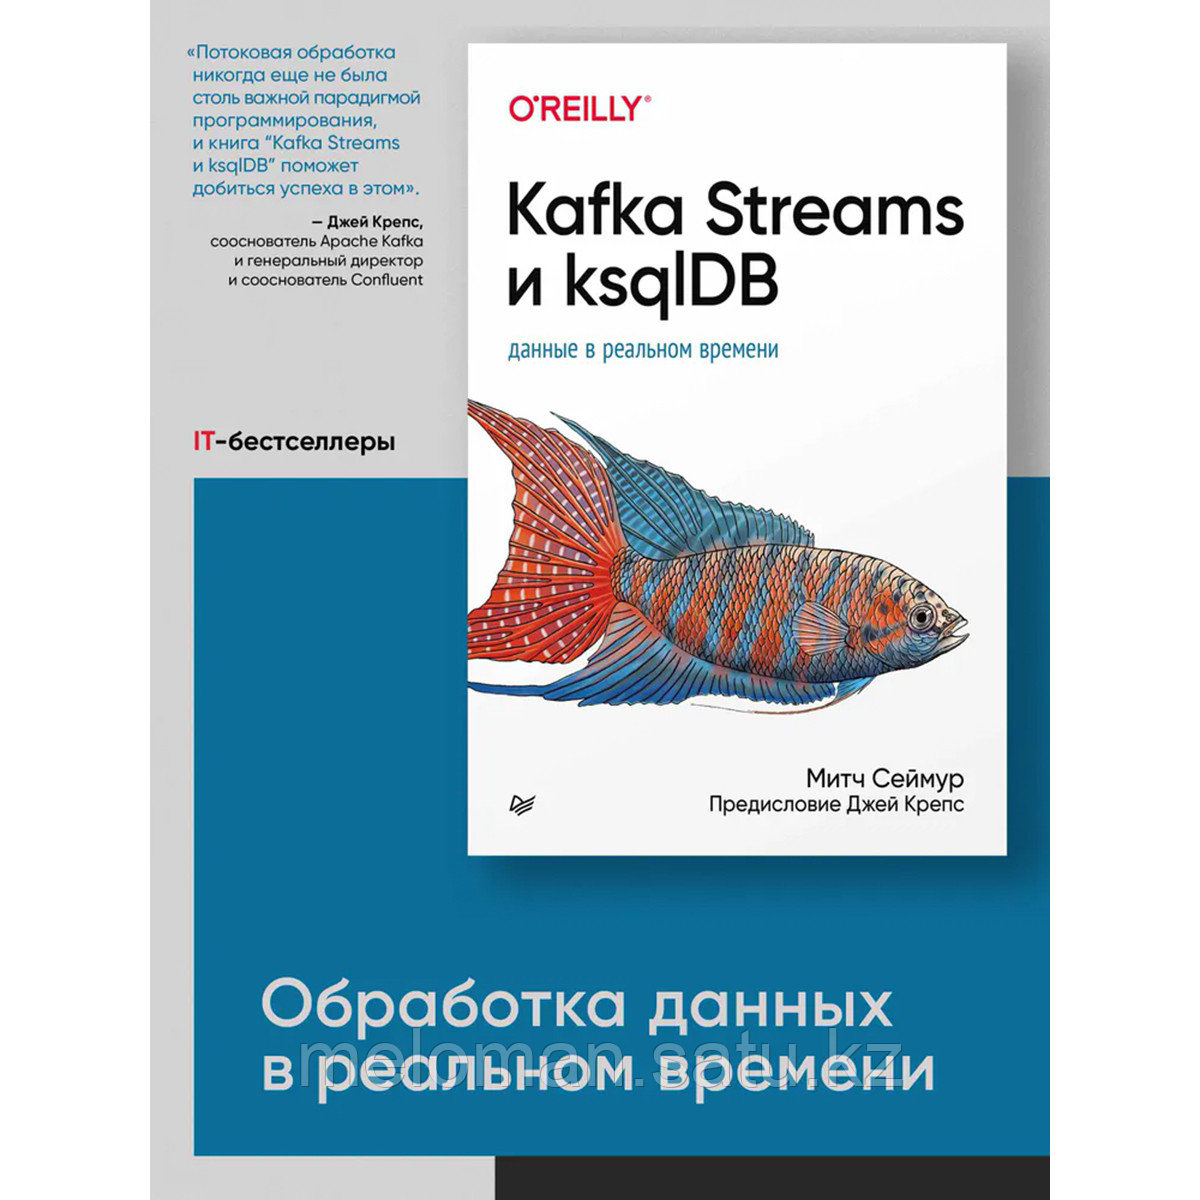 Сеймур М.: Kafka Streams и ksqlDB: данные в реальном времени